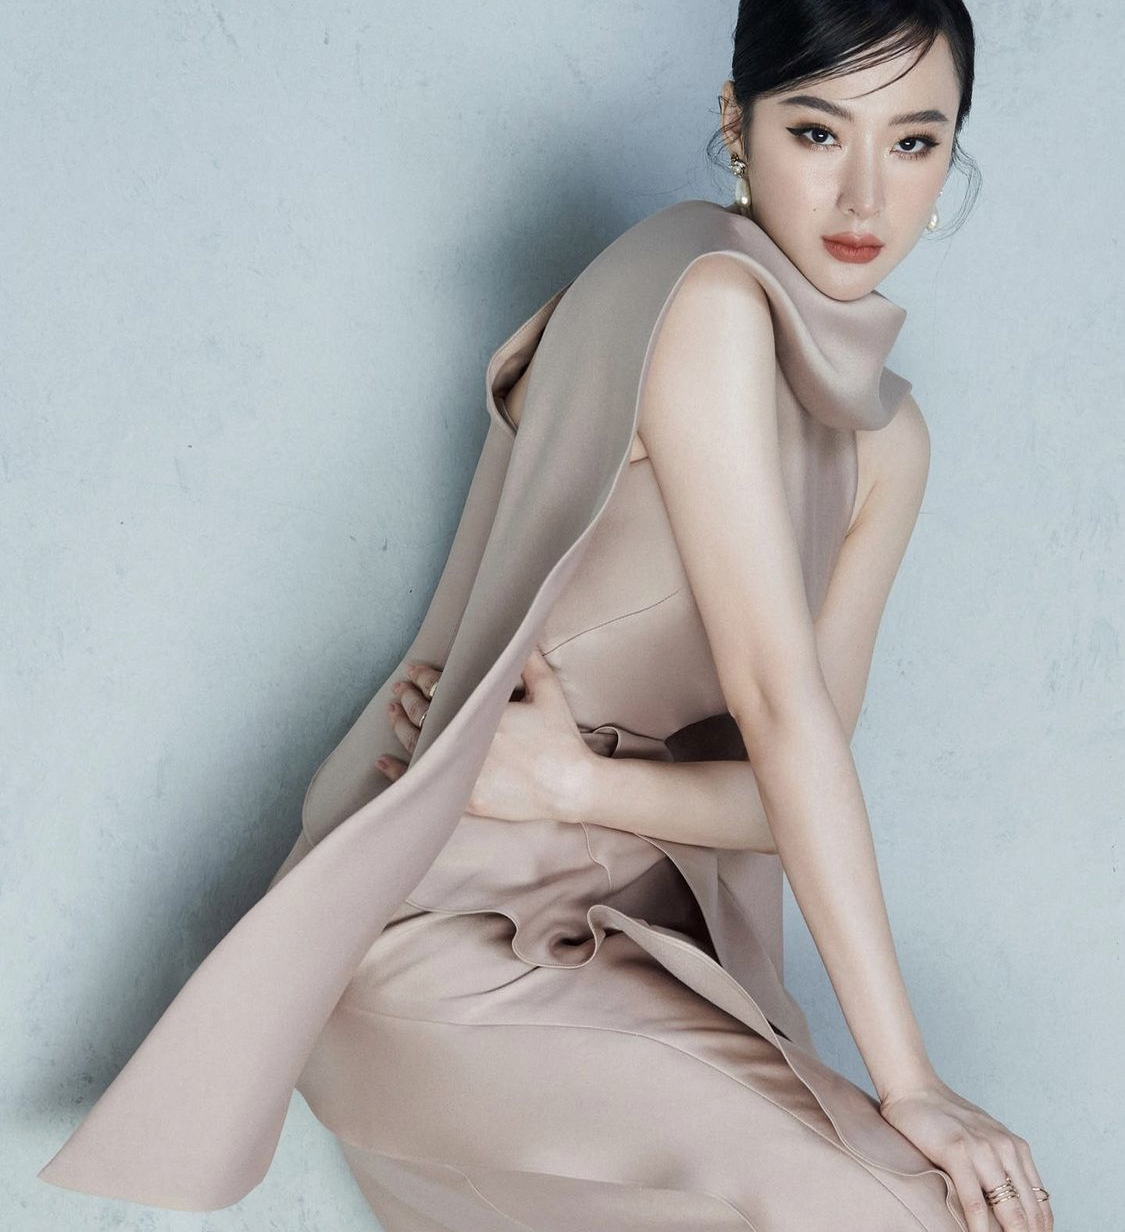 Dù không còn theo đuổi hào quang, thần thái và kĩ năng pose dáng cùng sự biểu đạt bằng ánh mắt của Angela Phương Trinh vẫn 'không phải dạng vừa'.